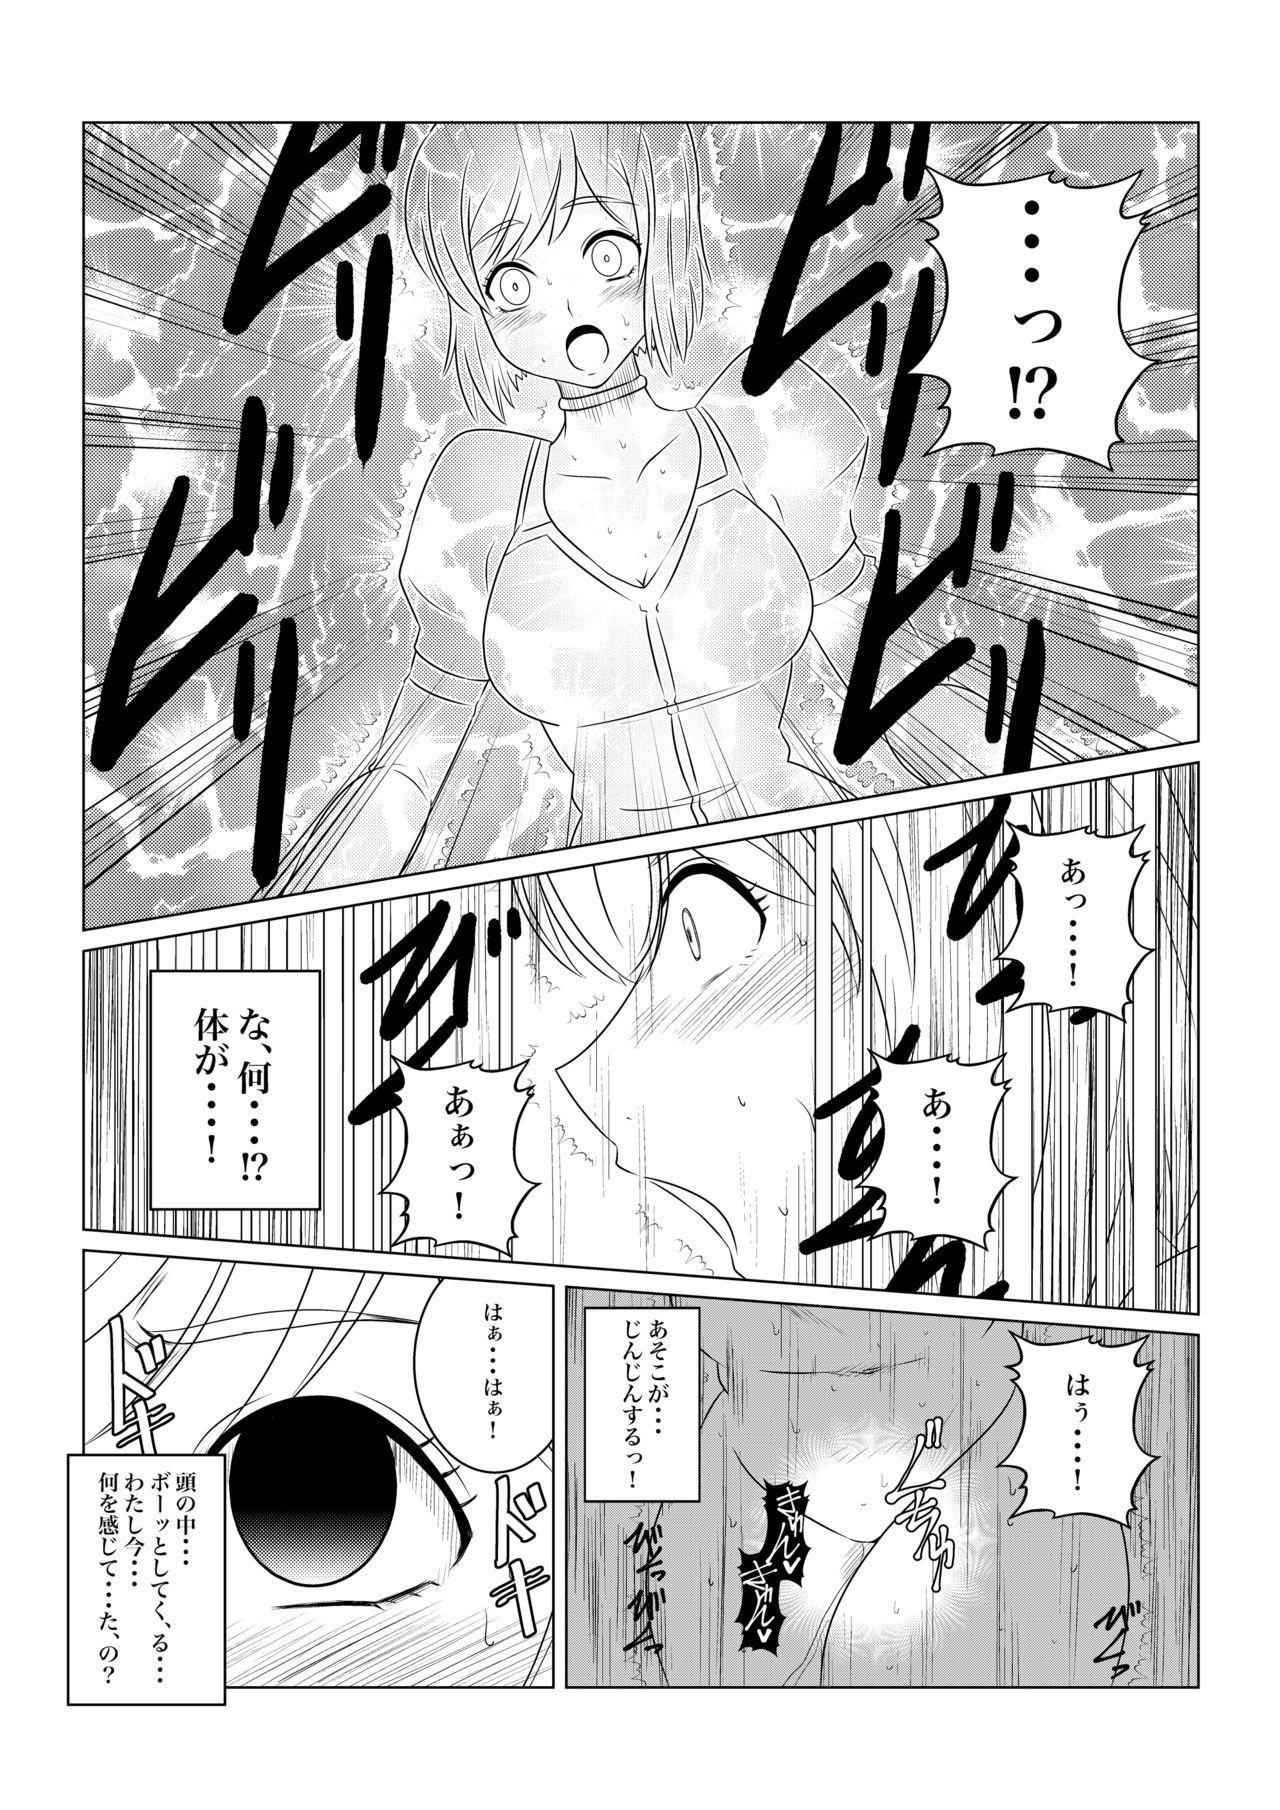 Tgirl Gekka Midarezaki - Tales of vesperia Bunduda - Page 8